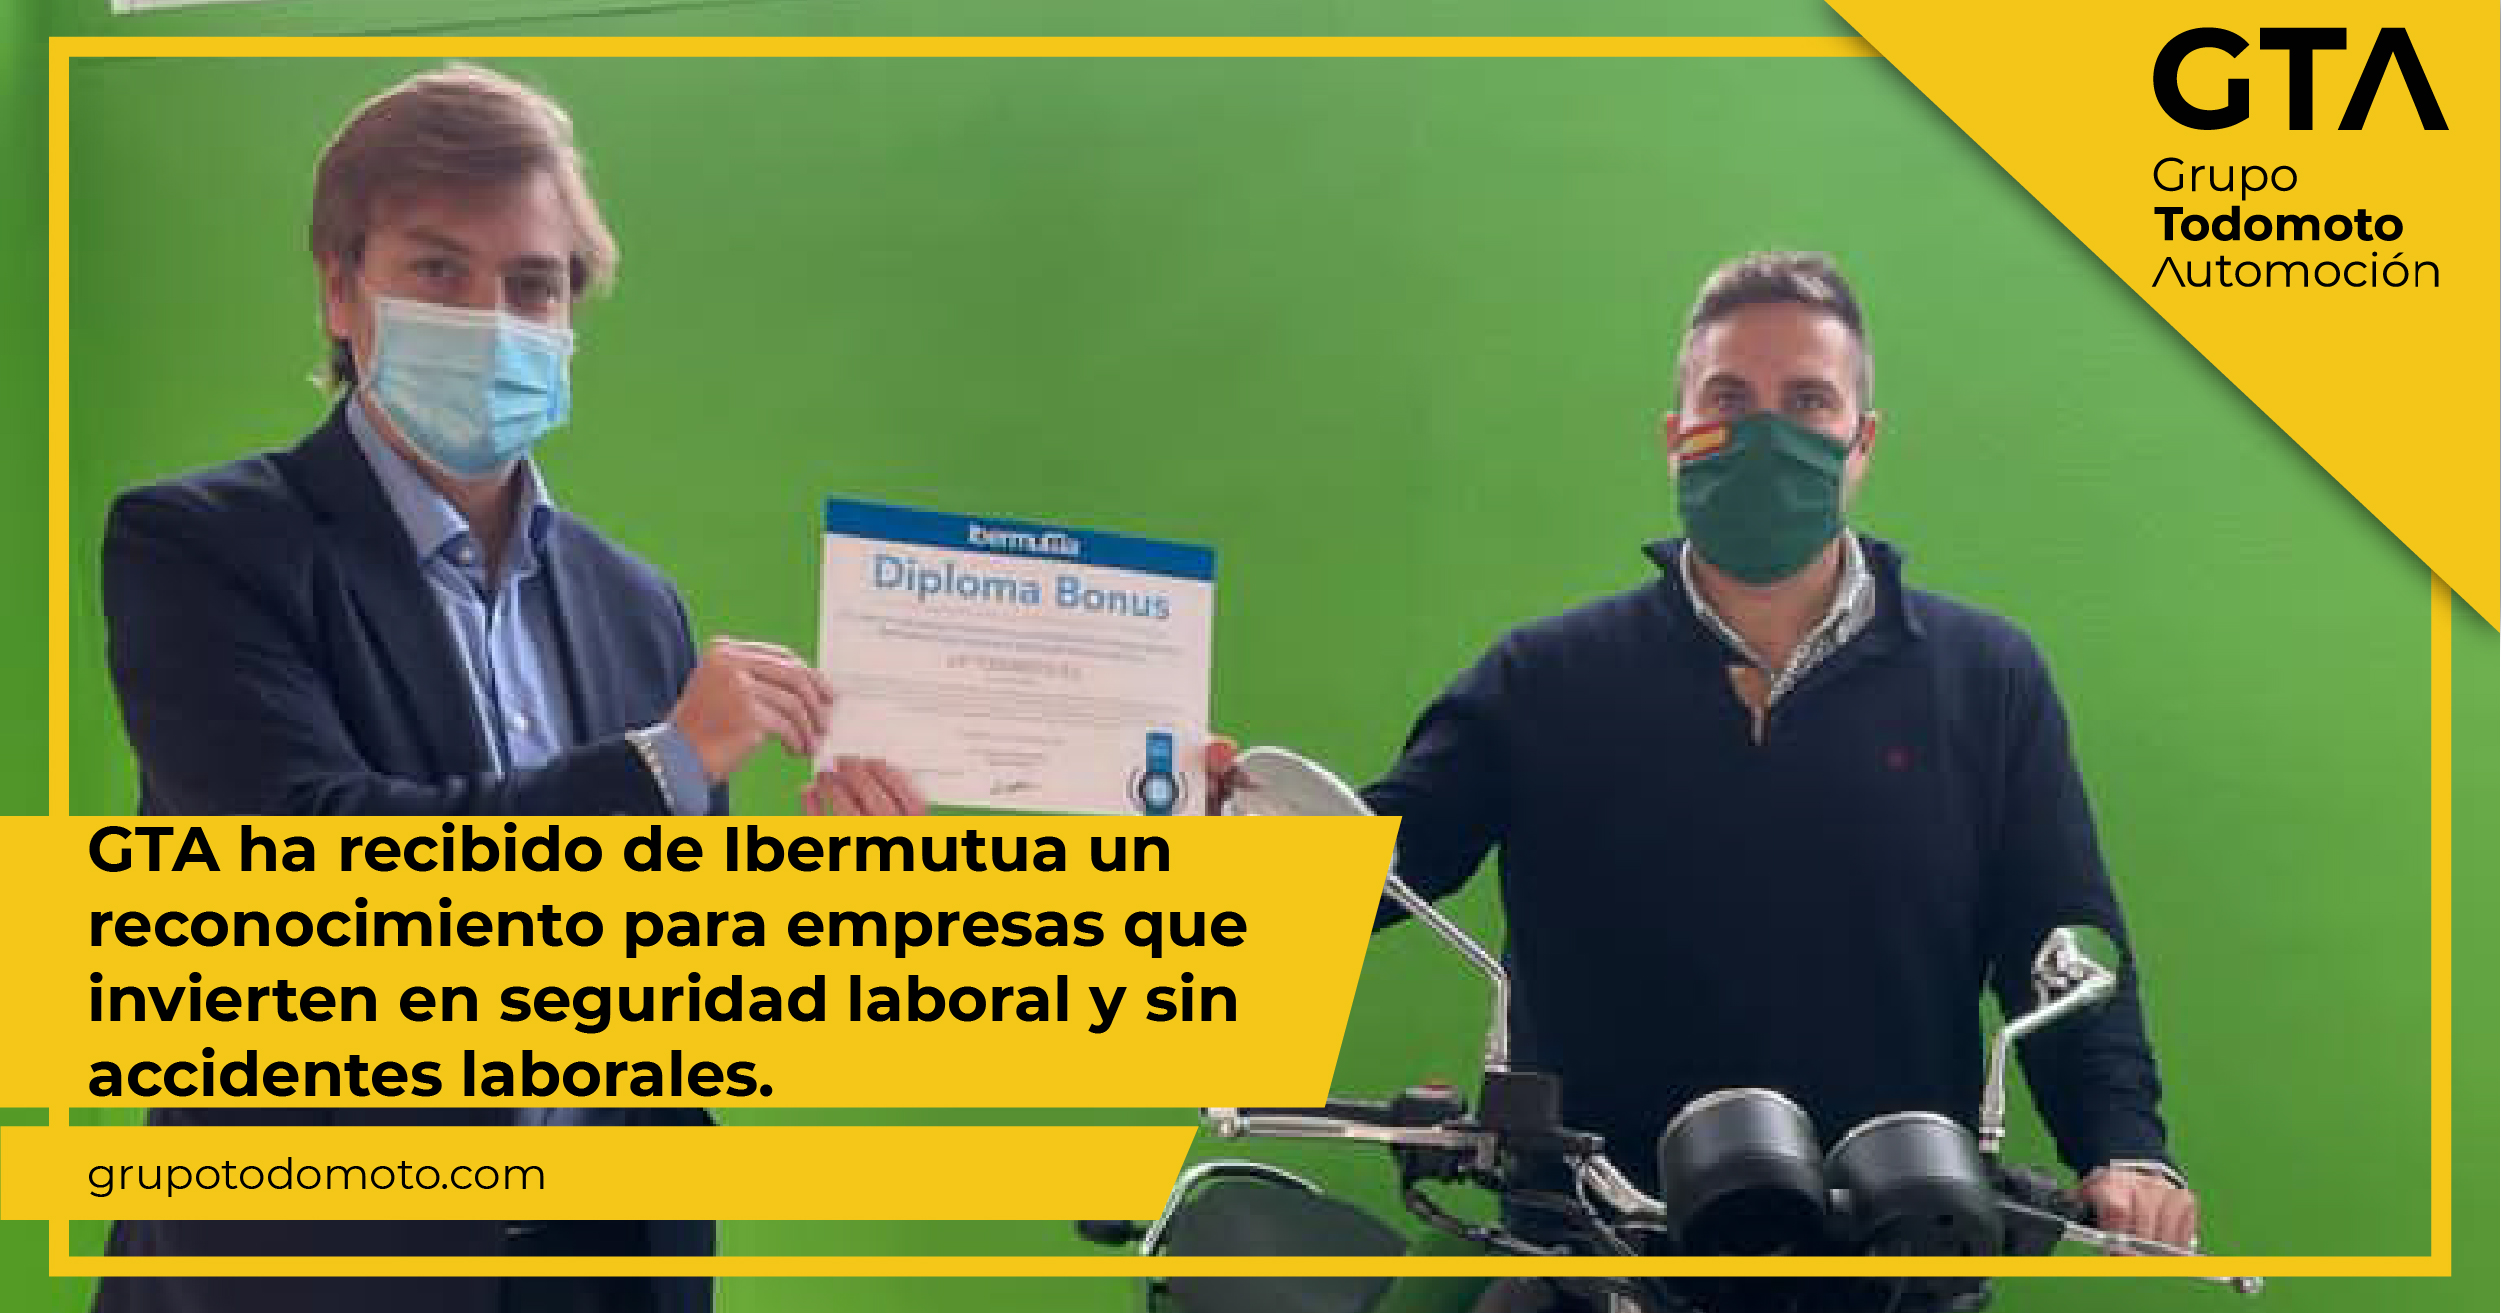 Grupo Todomoto Automoción recibe de Ibermutua un reconocimiento para empresas que invierten en seguridad laboral y sin accidente laborales